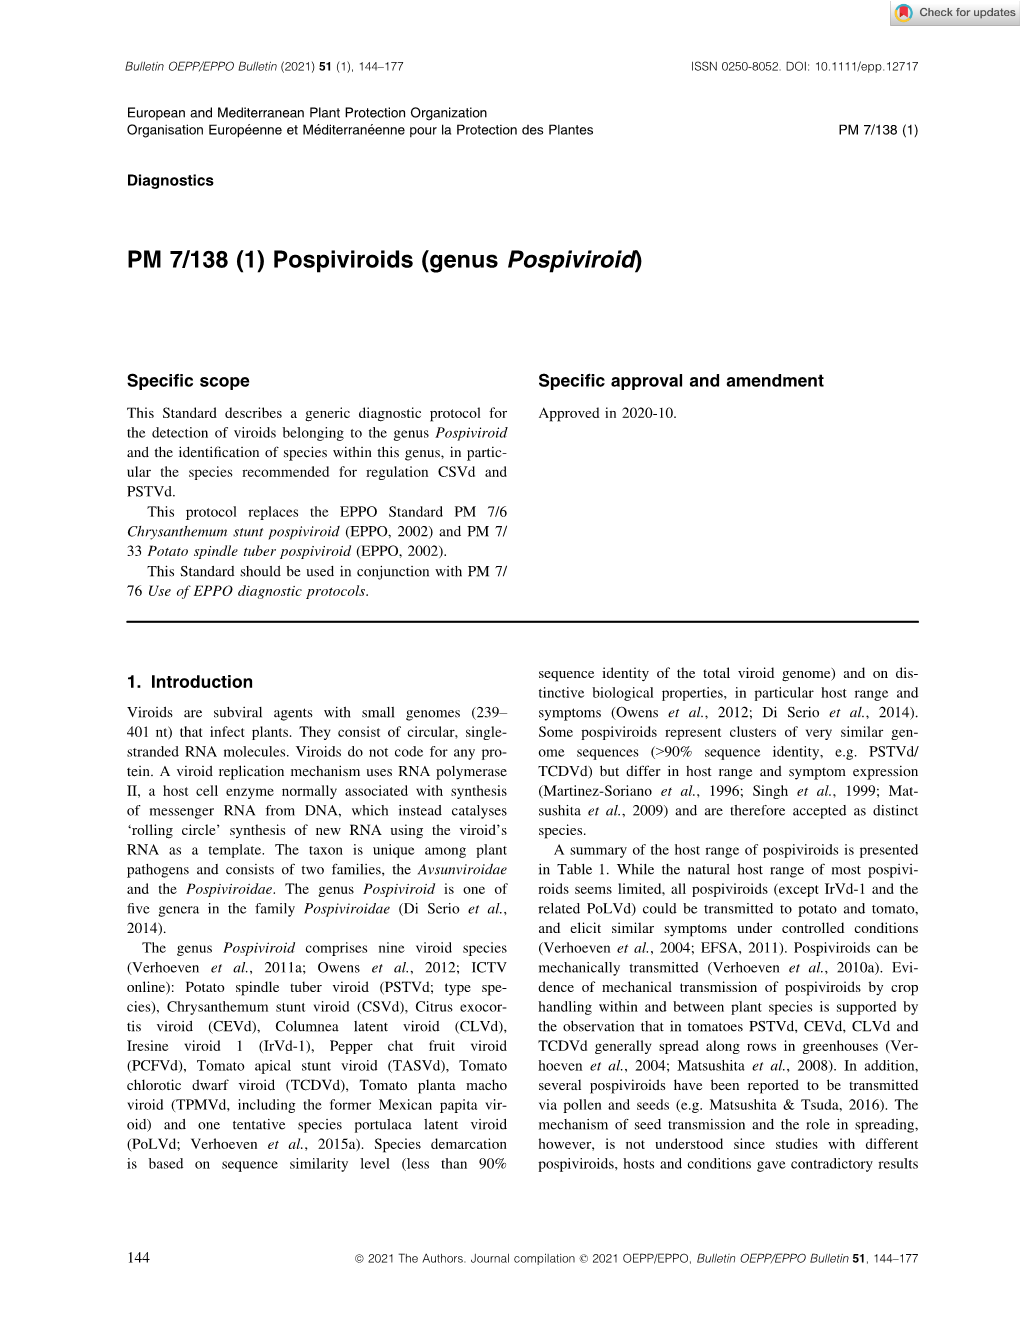 PM 7/138 (1) Pospiviroids (Genus Pospiviroid)